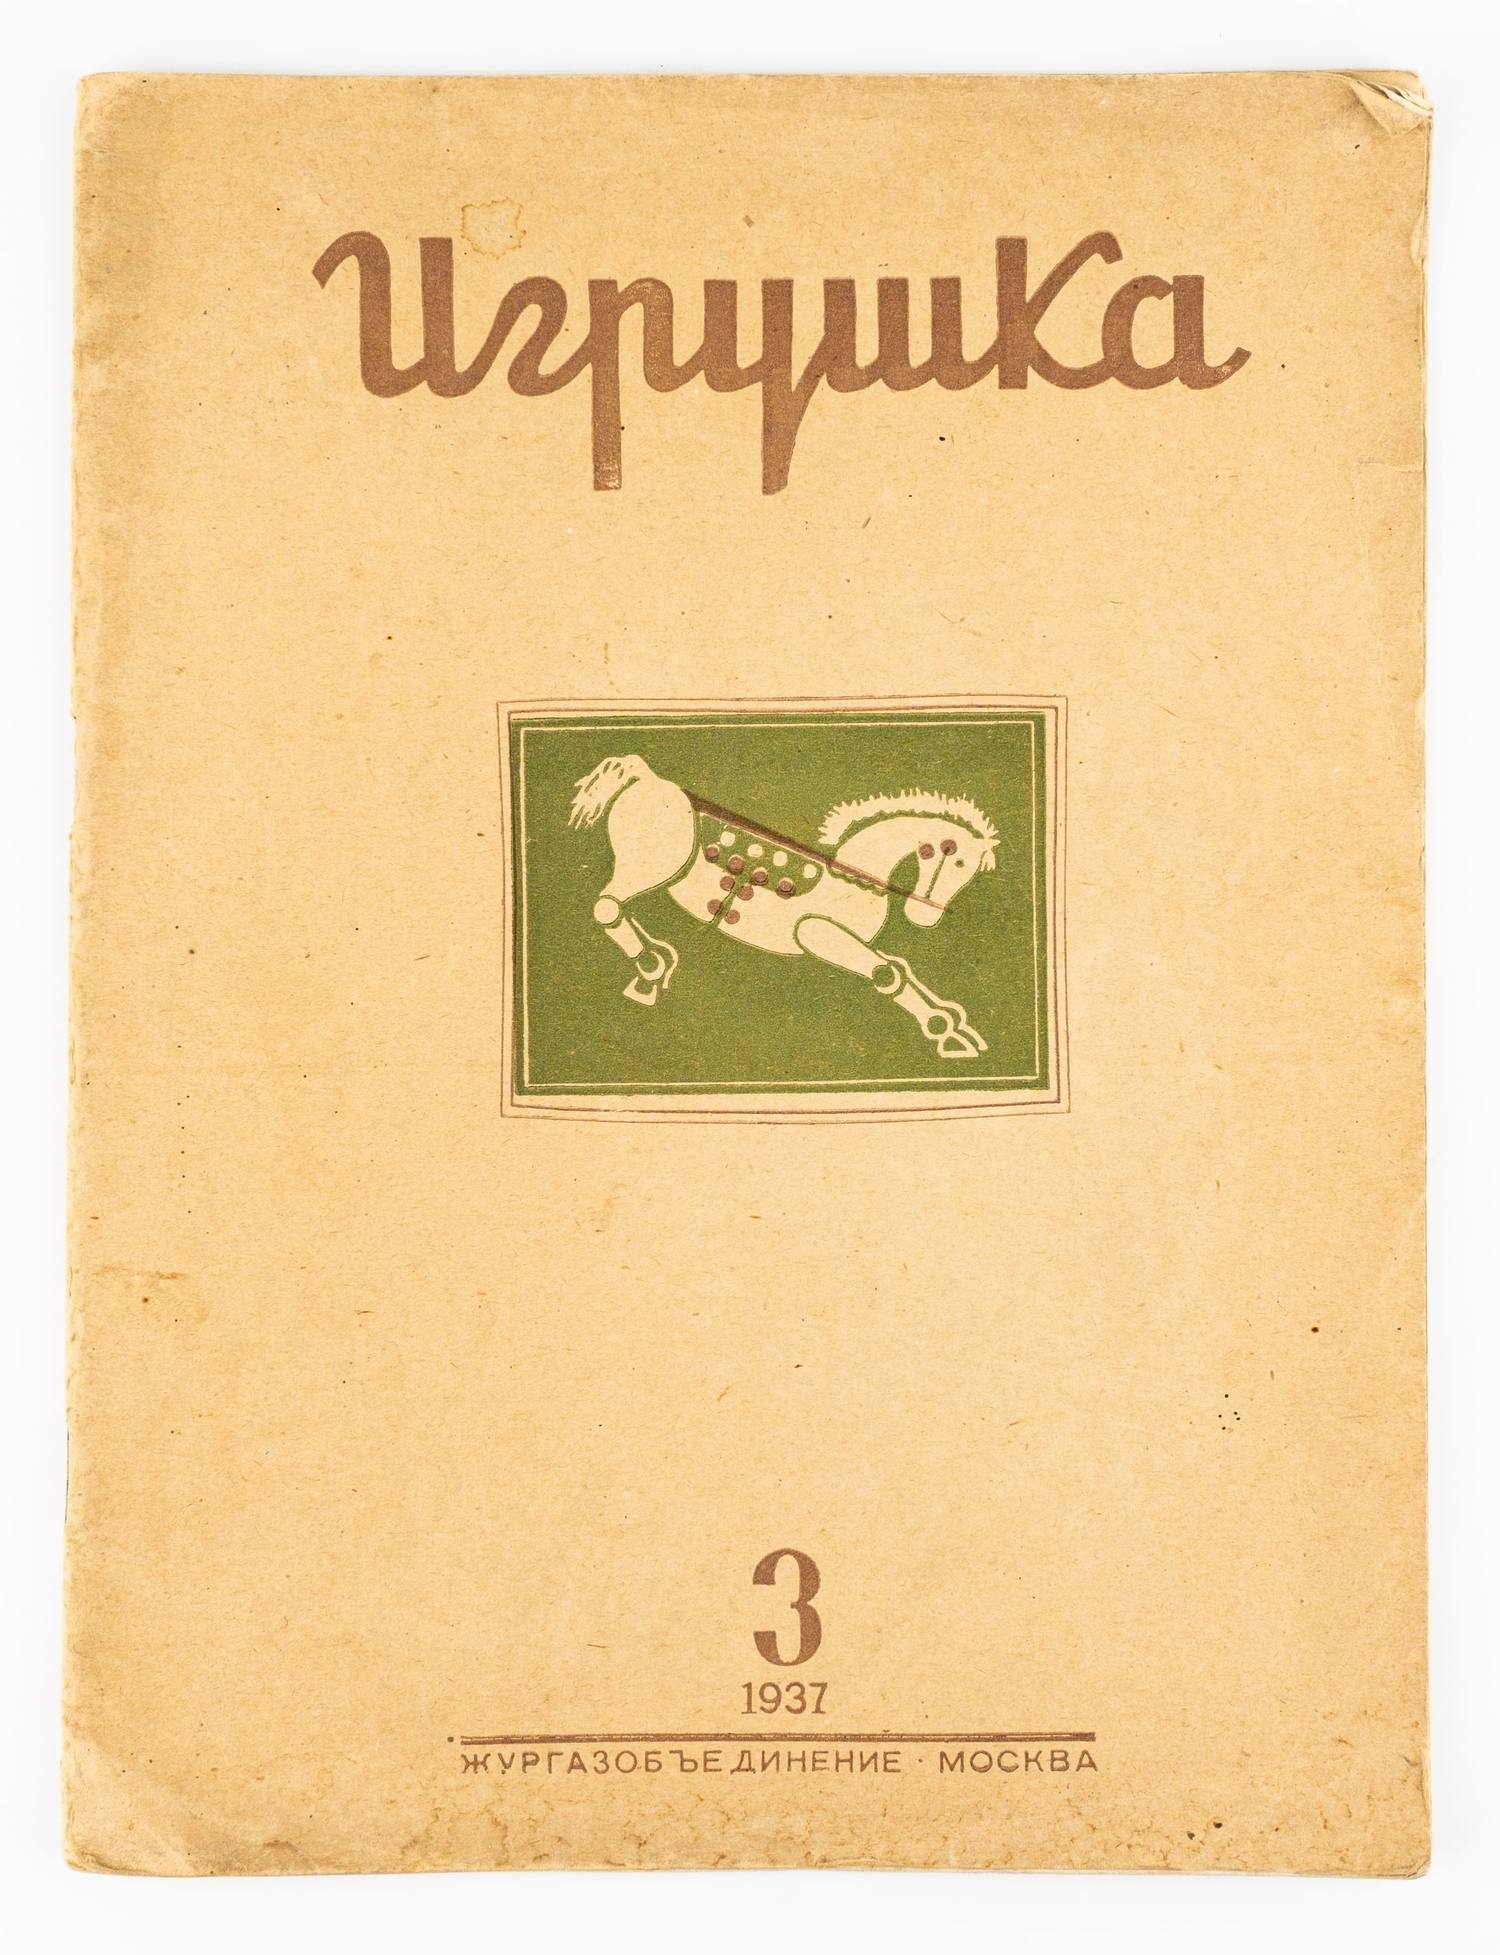 (Редкий специализированный журнал) Игрушка: Иллюстрированный ежемесячный журнал №3 1937.